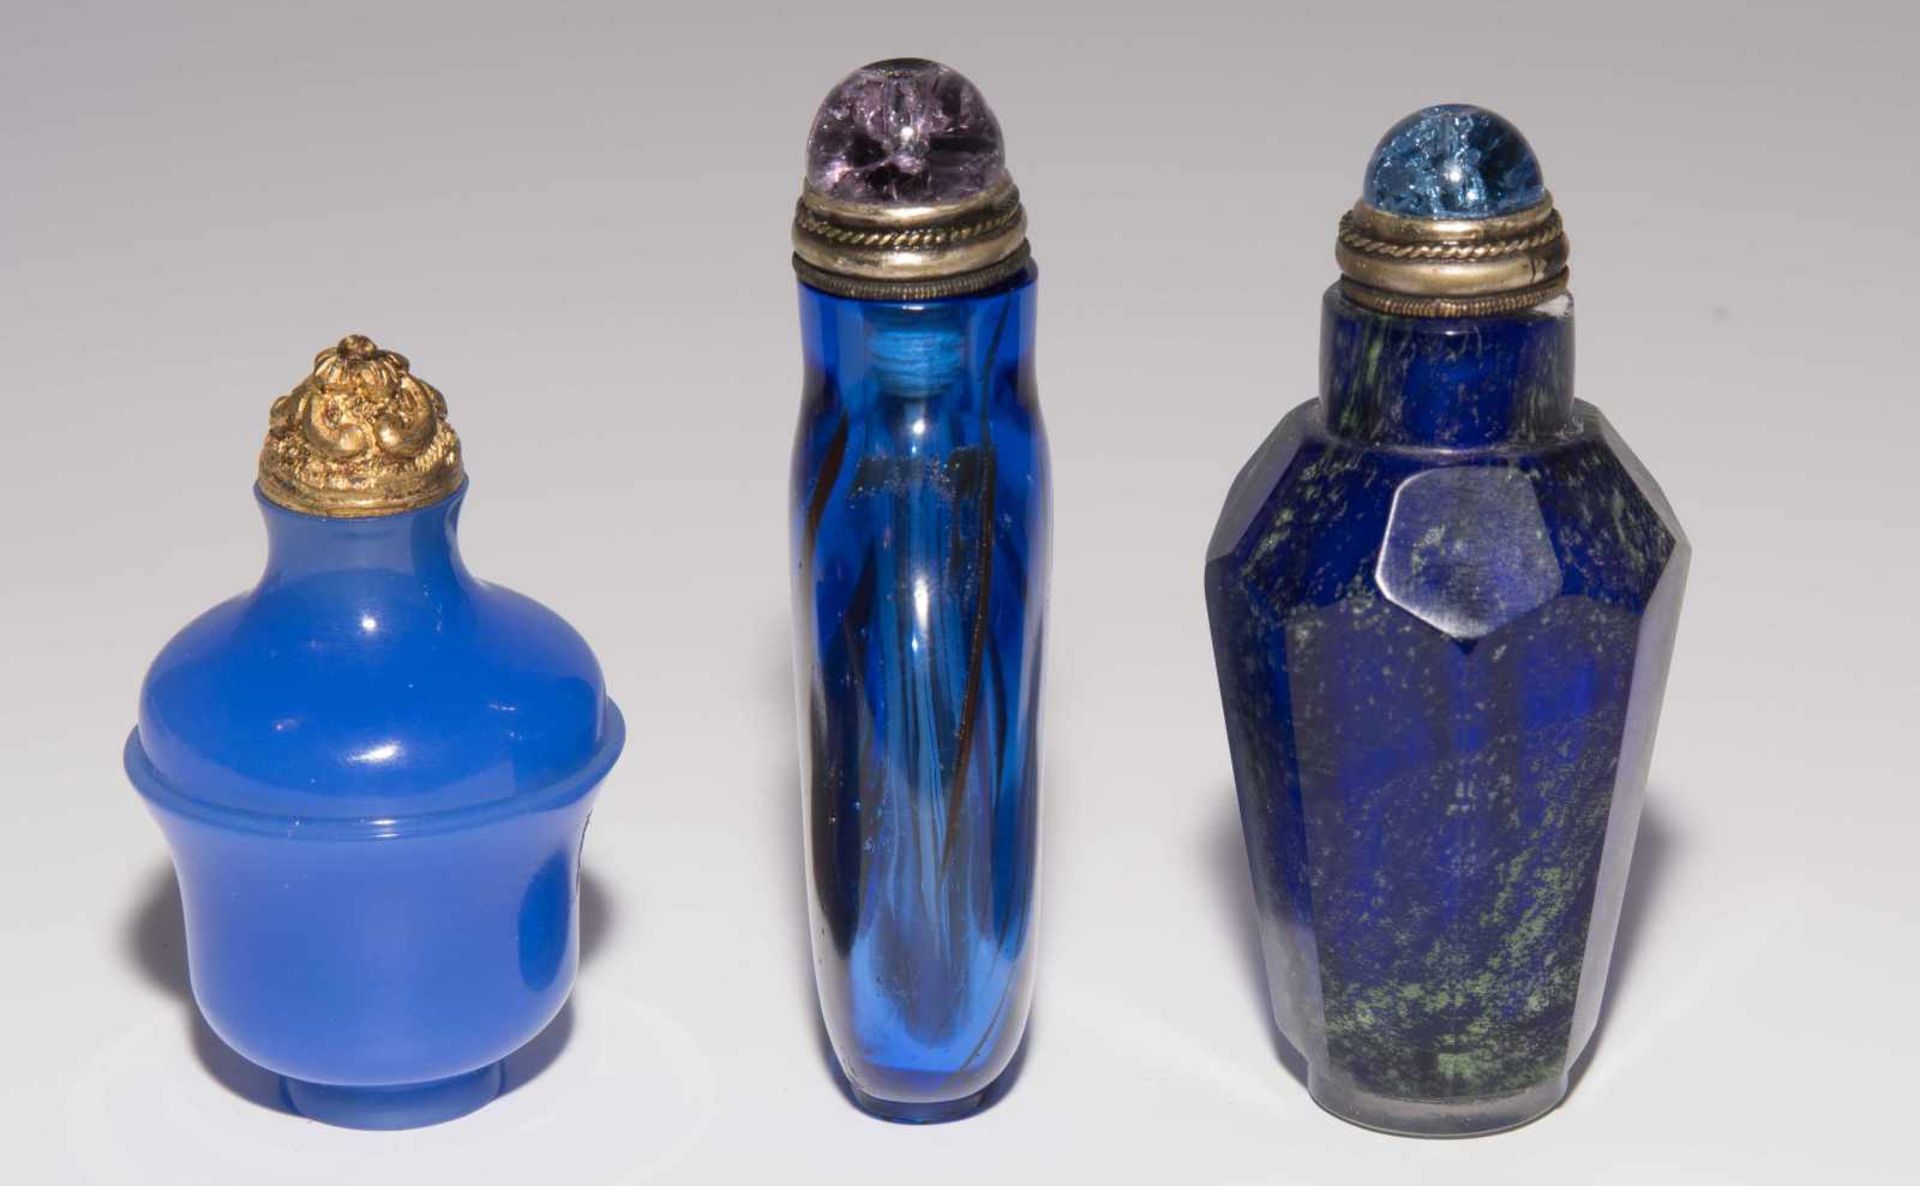 6 Glas Snuff BottlesChina. Opakes und transparentes Glas in verschiedenen Blautönen tlw. bunt - Image 8 of 15